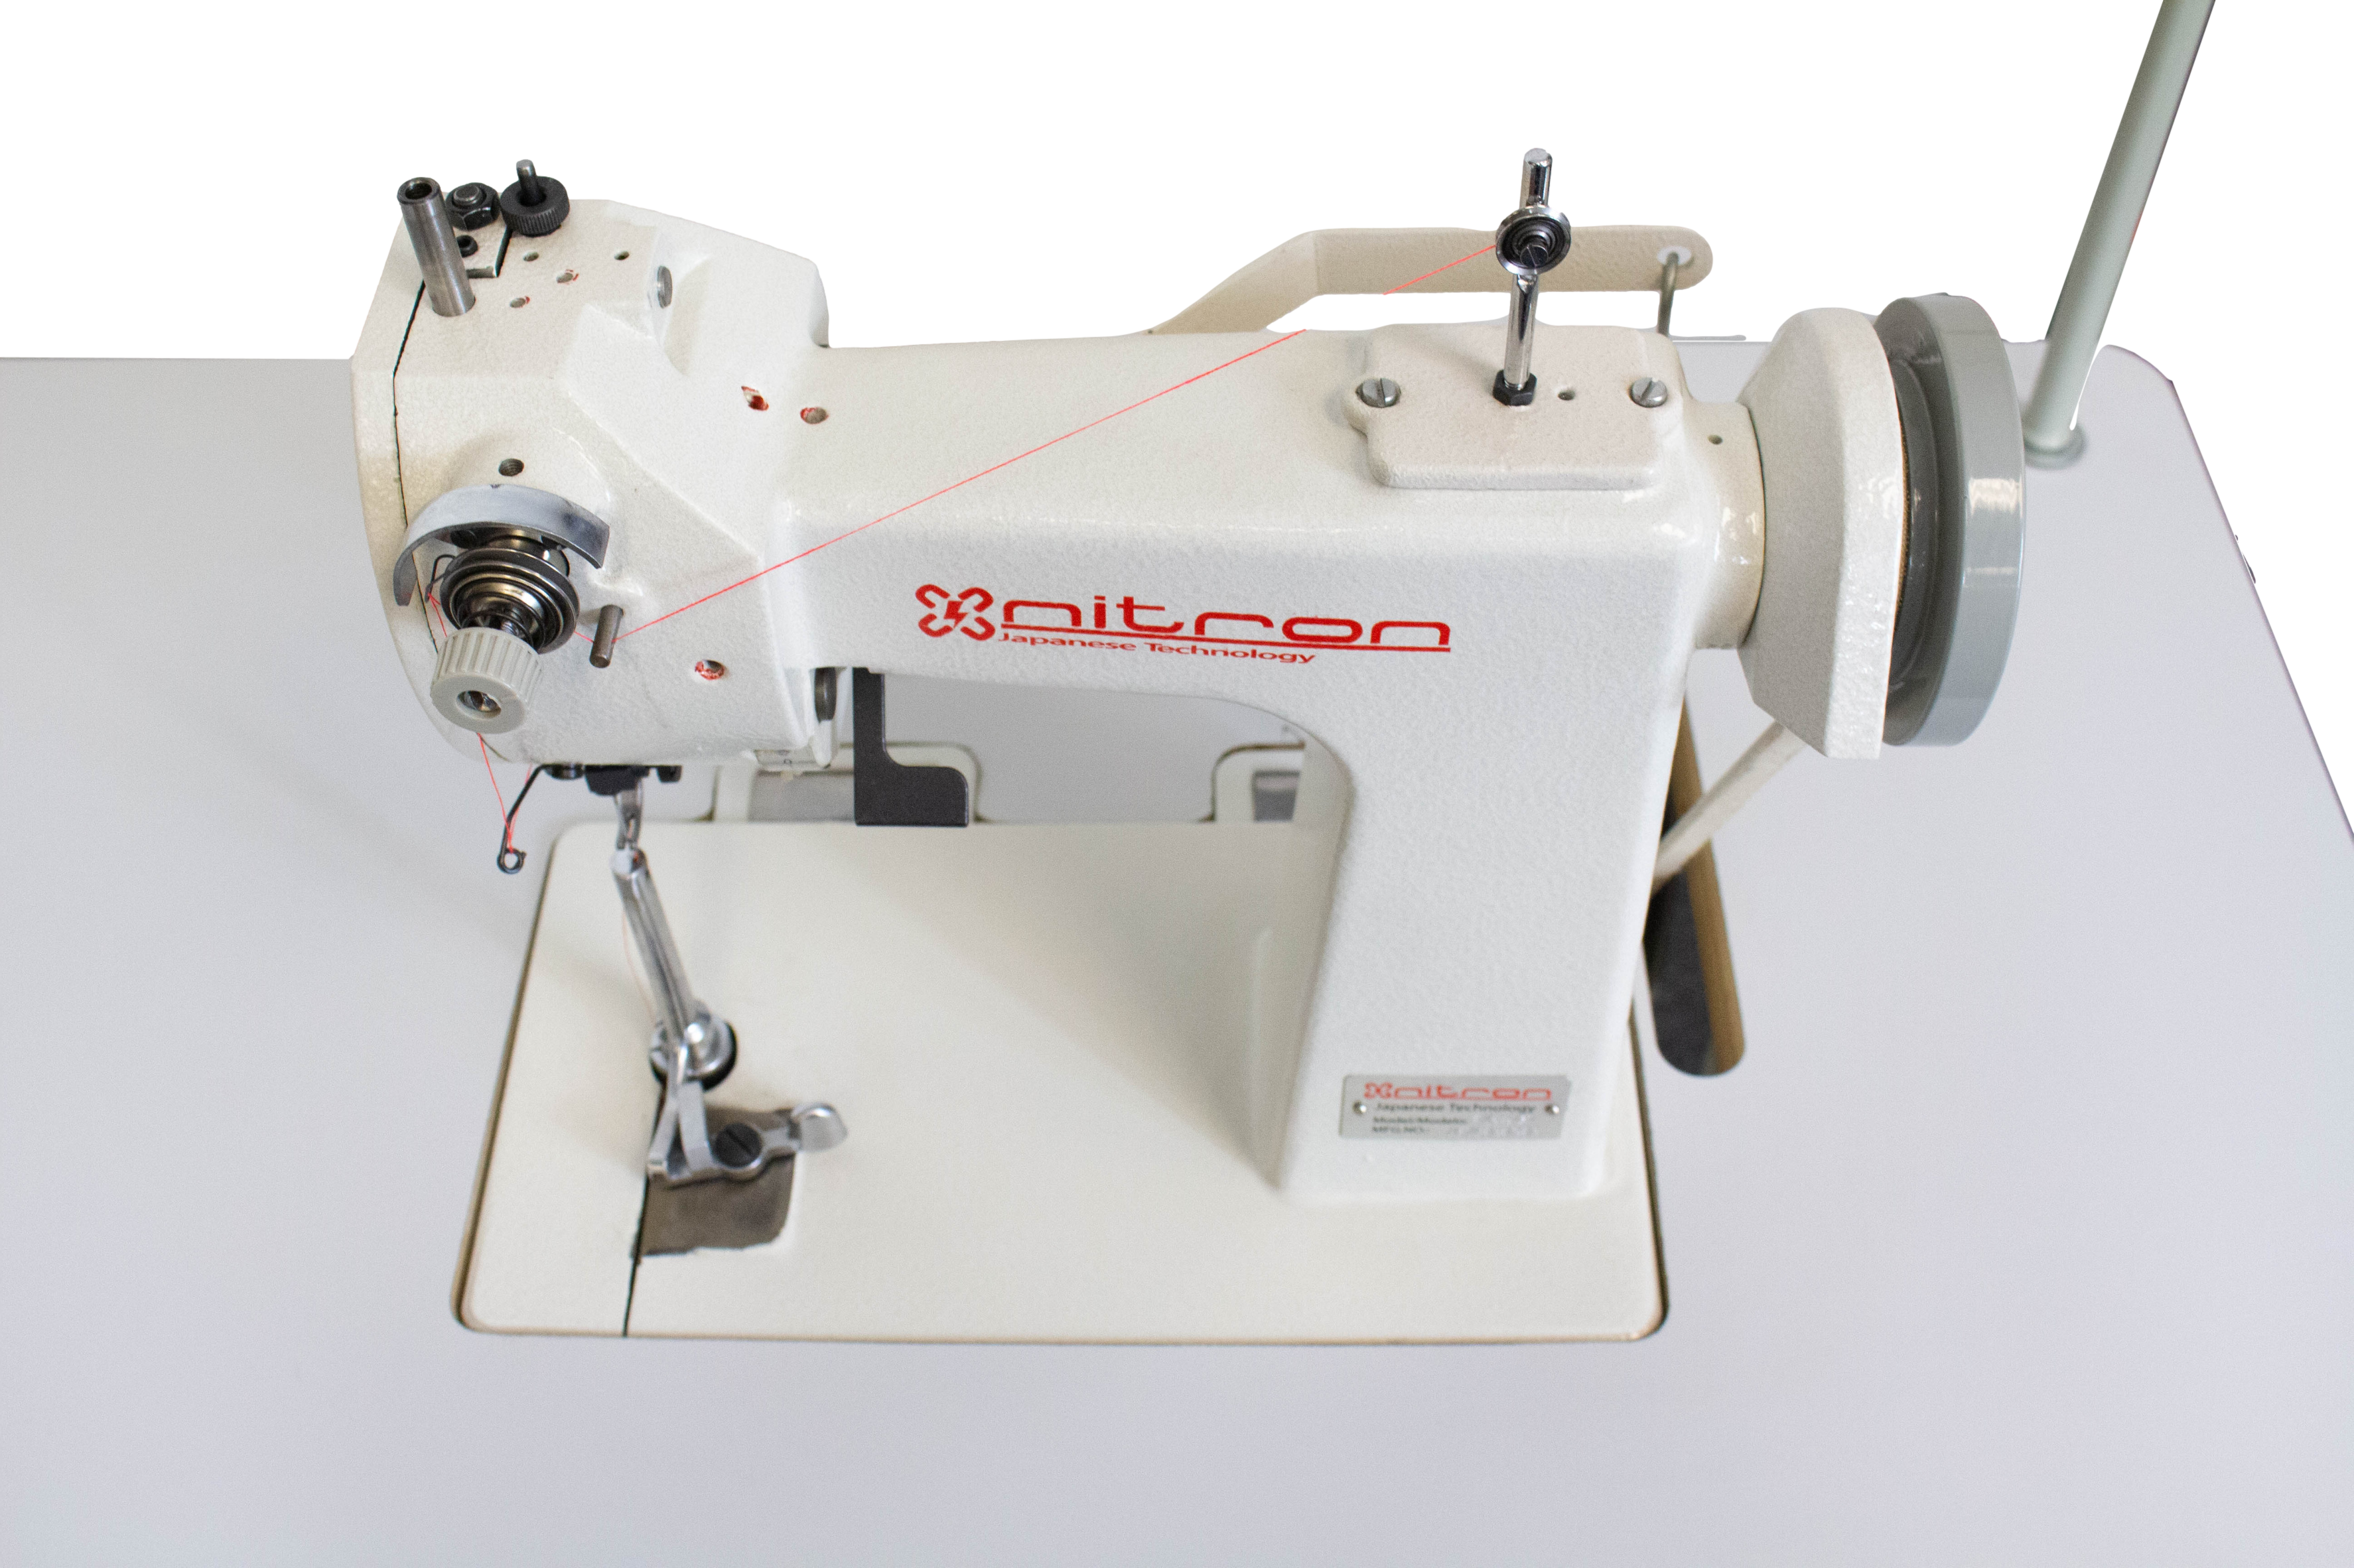 Singer double-thread chainstitch glove sewing machine